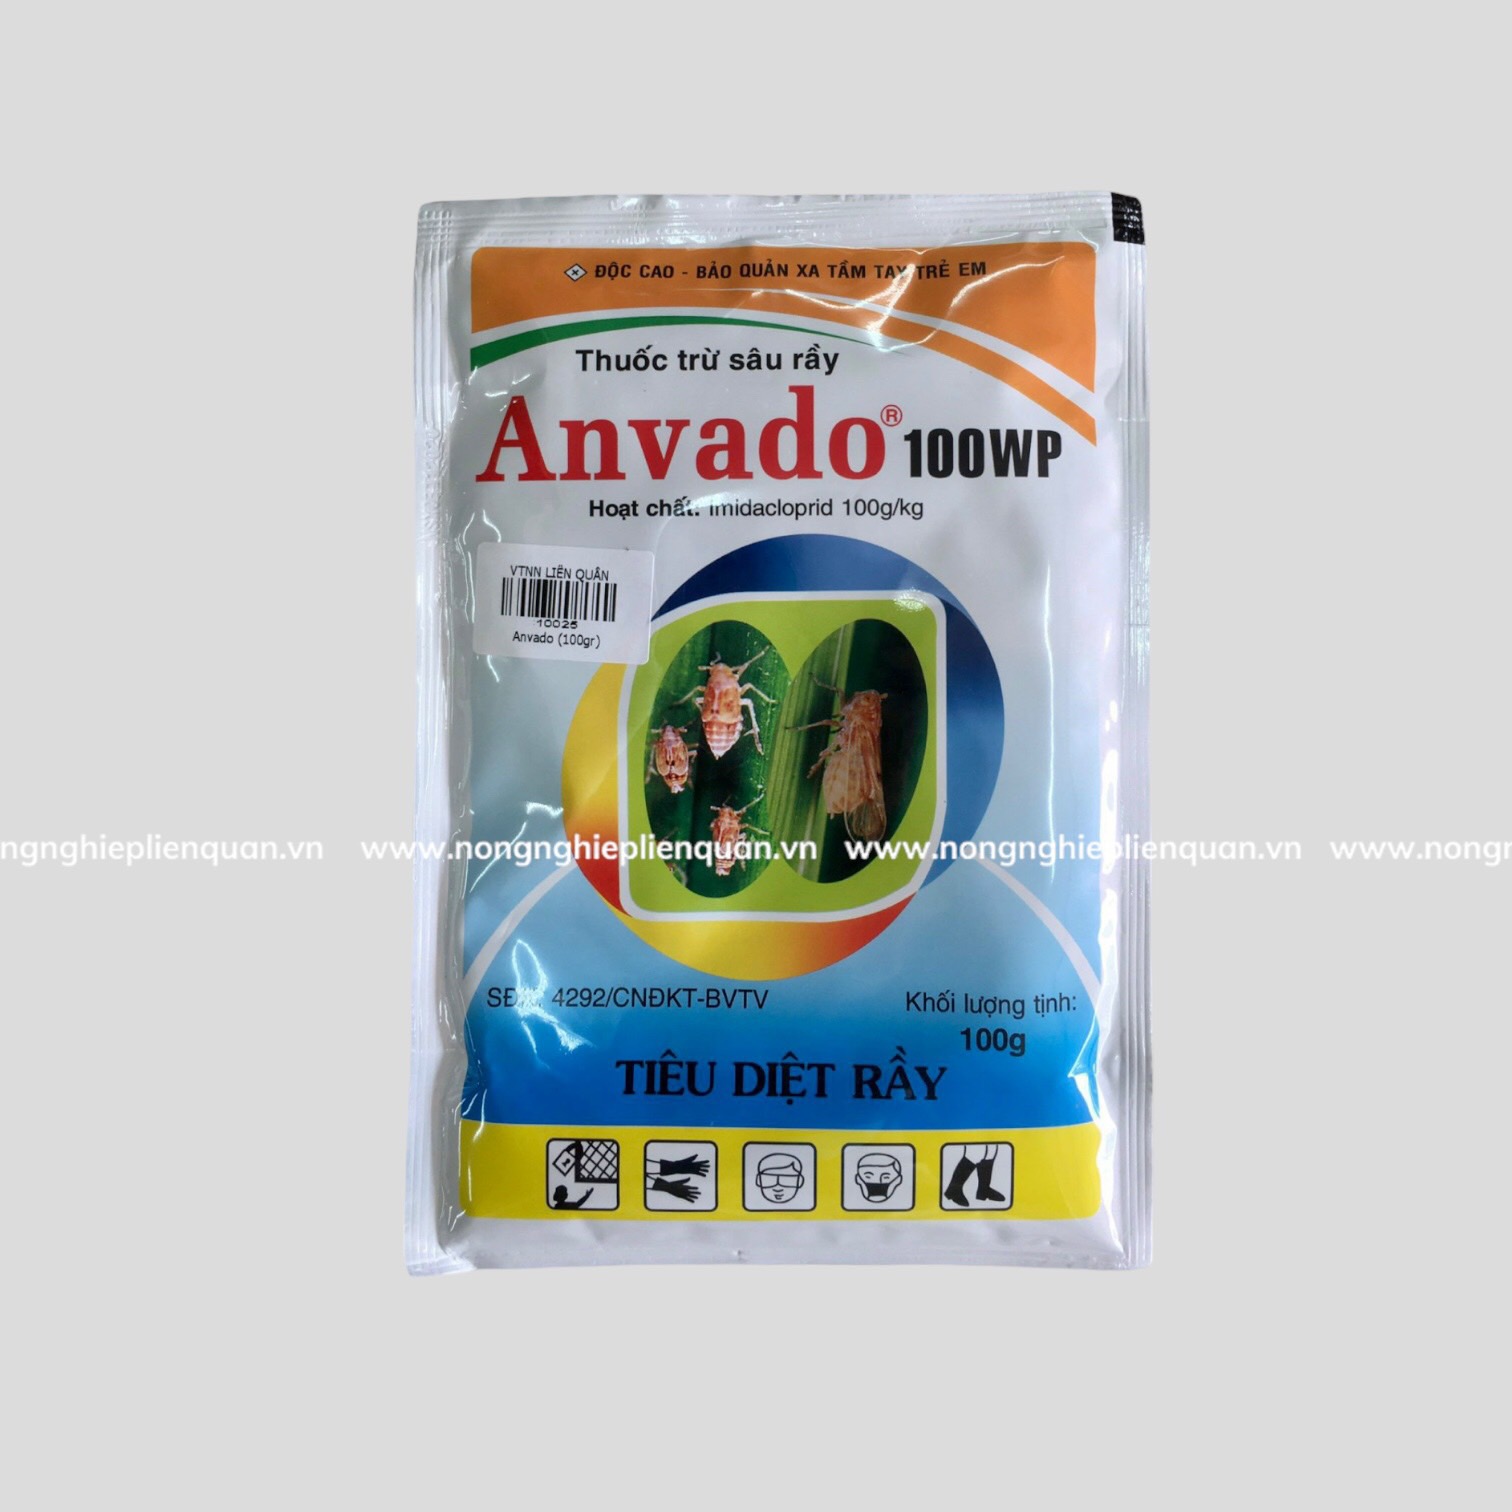 ANVADO 100WP (100G)